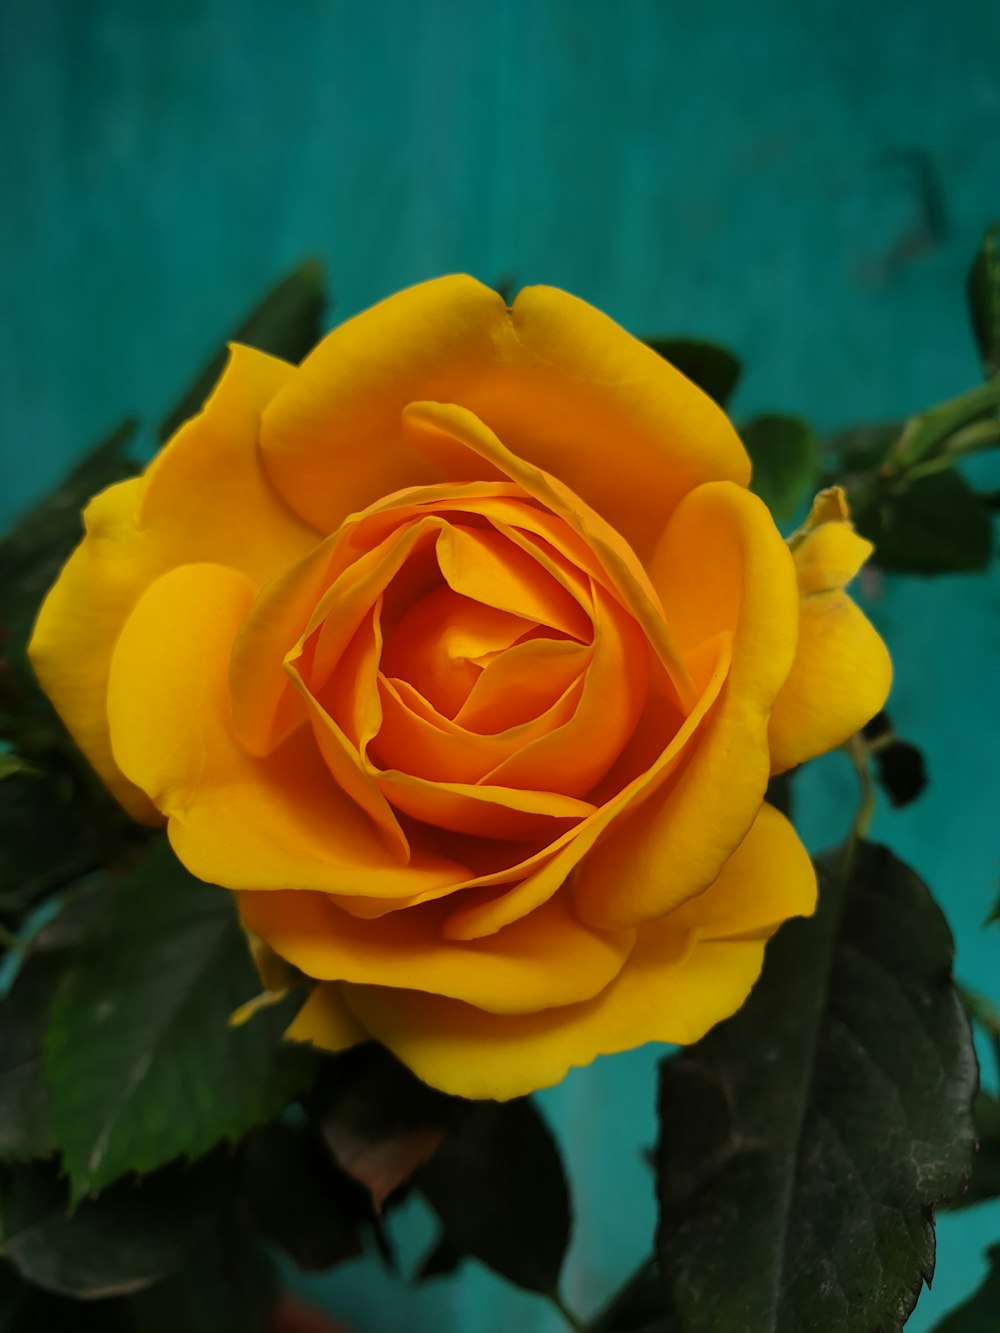 rosa gialla in fiore durante il giorno